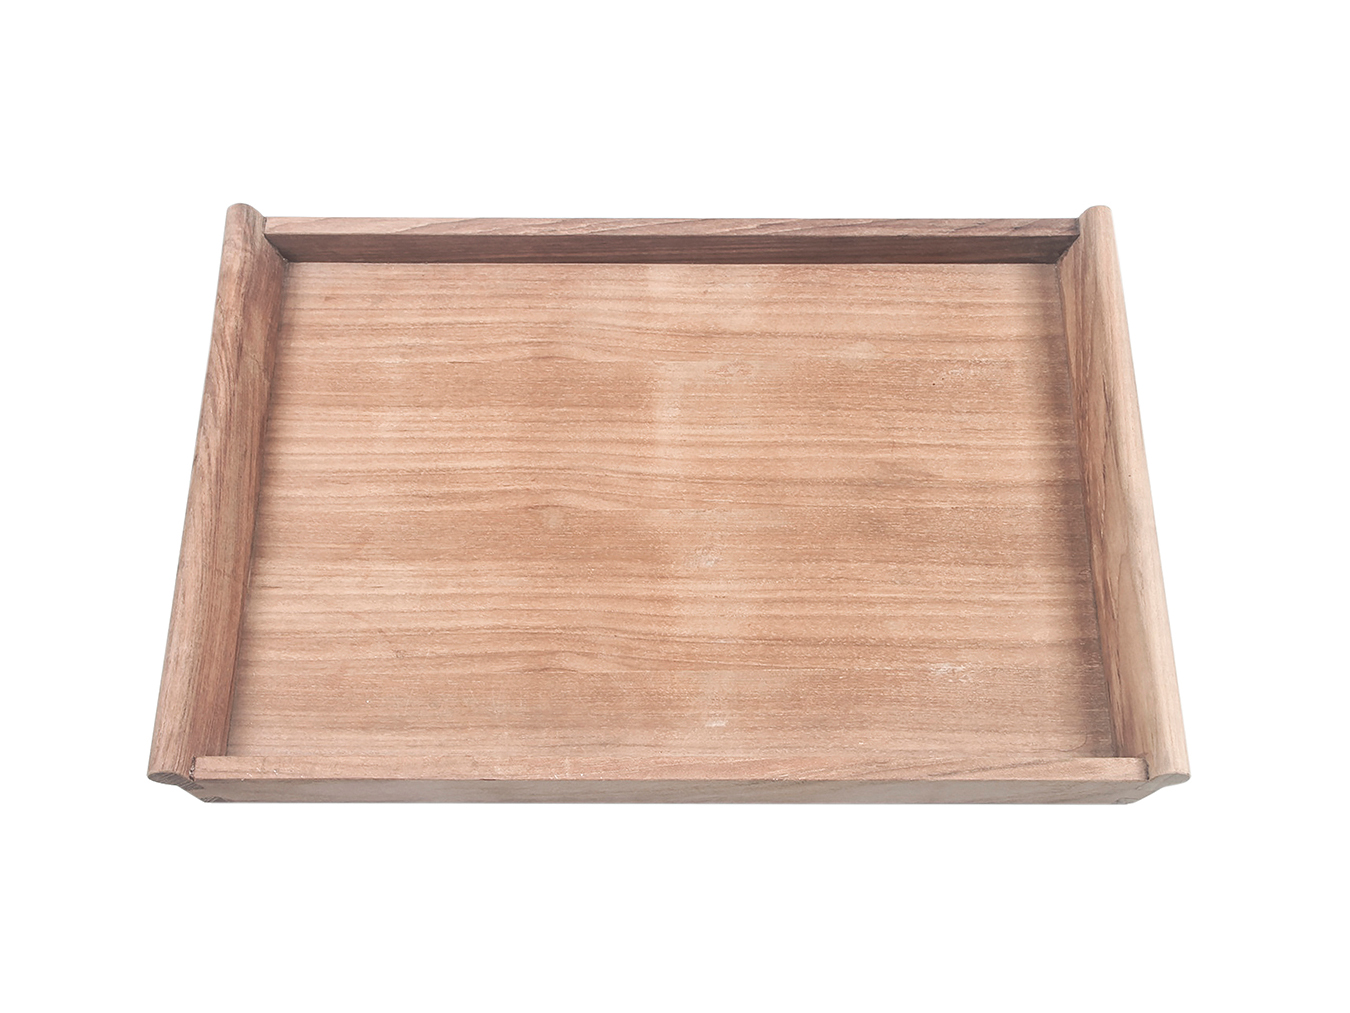 Tabletttisch klappbar Traditional STAND HolzDesignPur von Teak | WITH TRAY TRAY SERVING